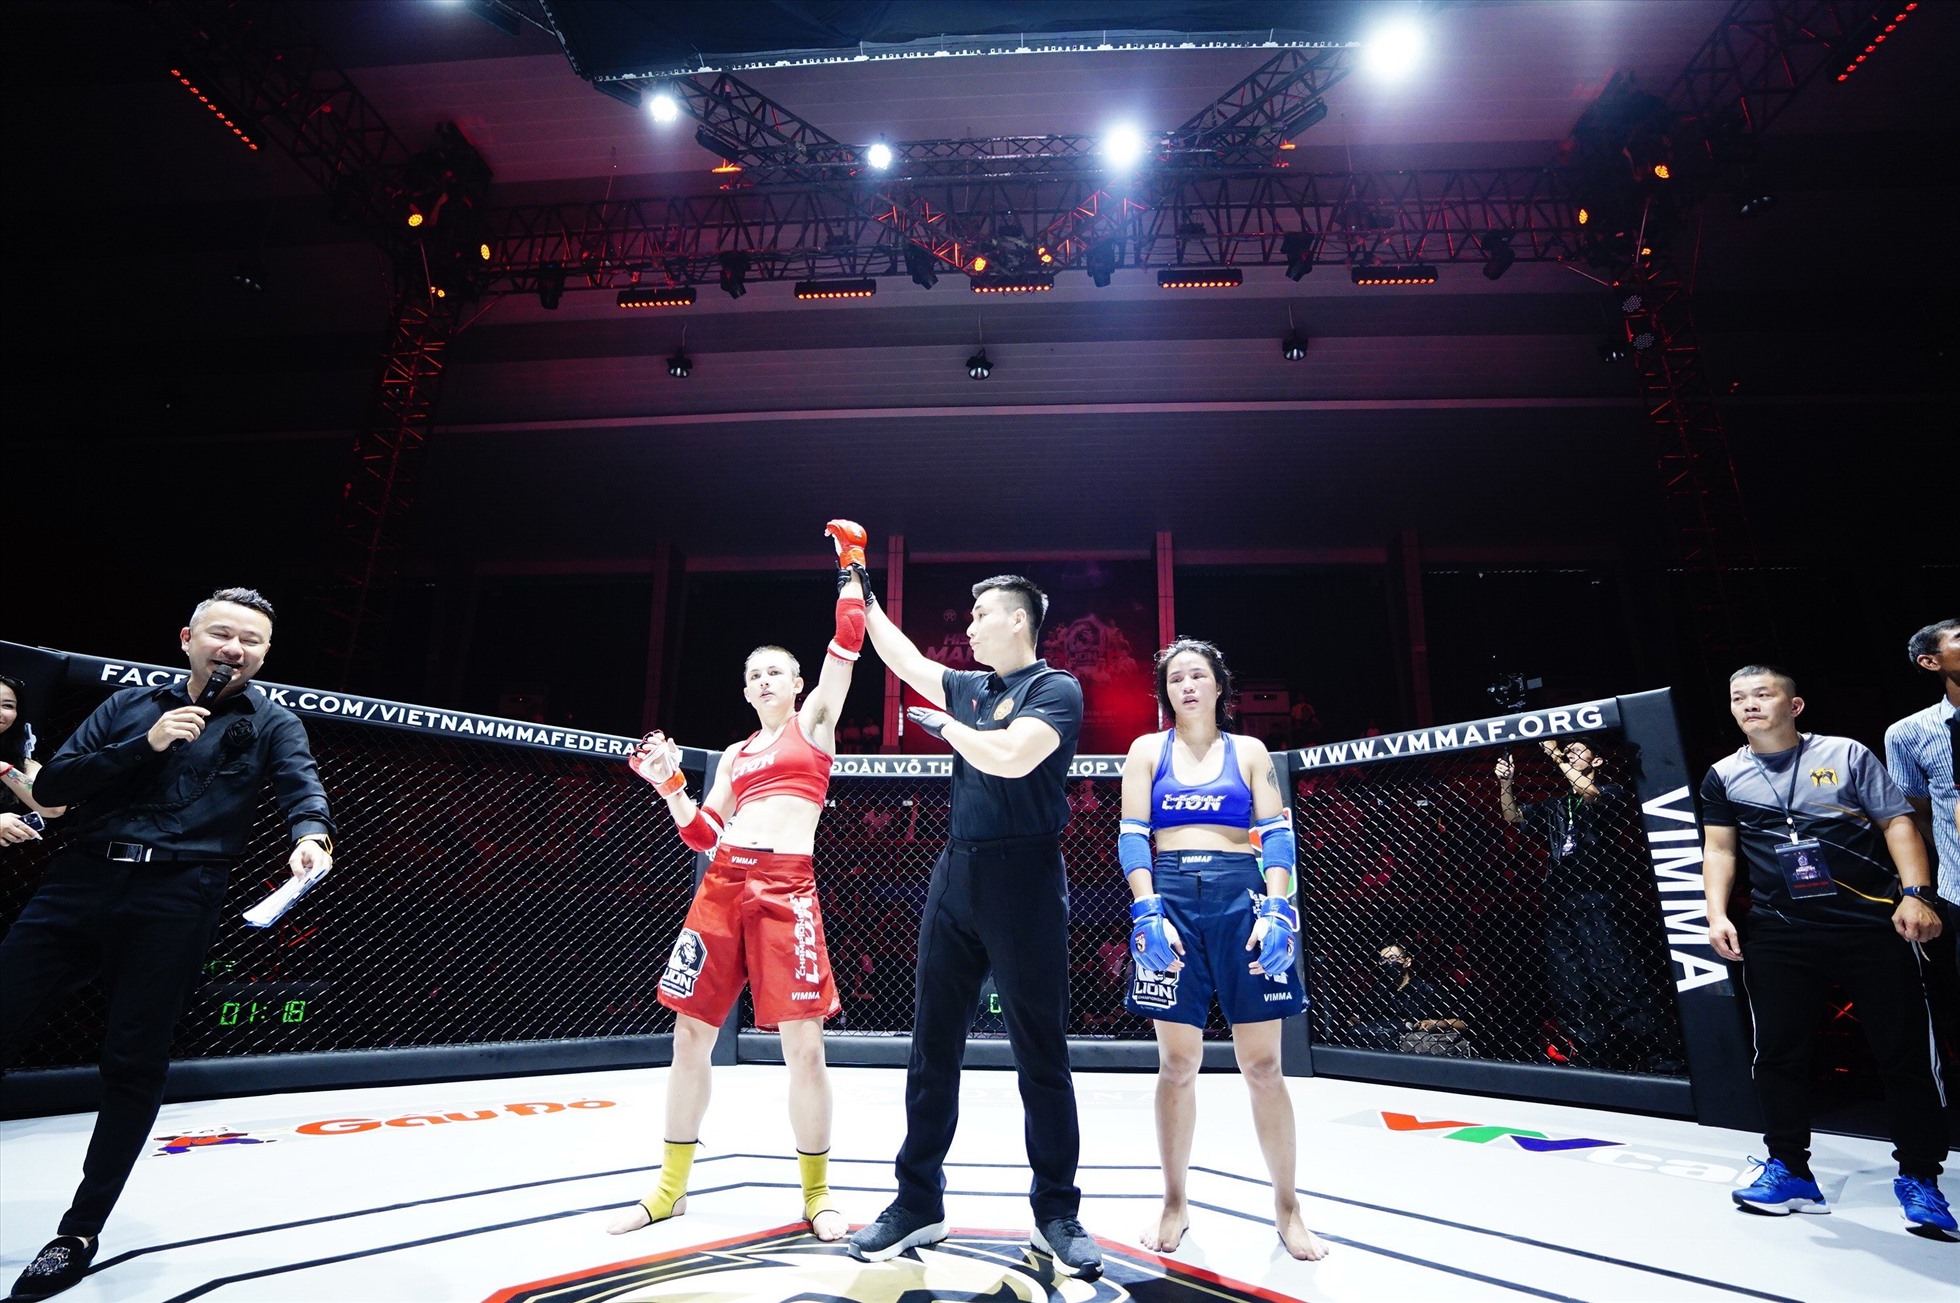 Ở hạng 56kg nữ, võ sĩ nước ngoài Bianka Balaijti (đỏ) thắng submission Lê Nguyễn Khánh Linh (xanh) bằng kĩ thuật rear naked choke (siết cổ sau) ở 1 phút 42 giây hiệp 3.